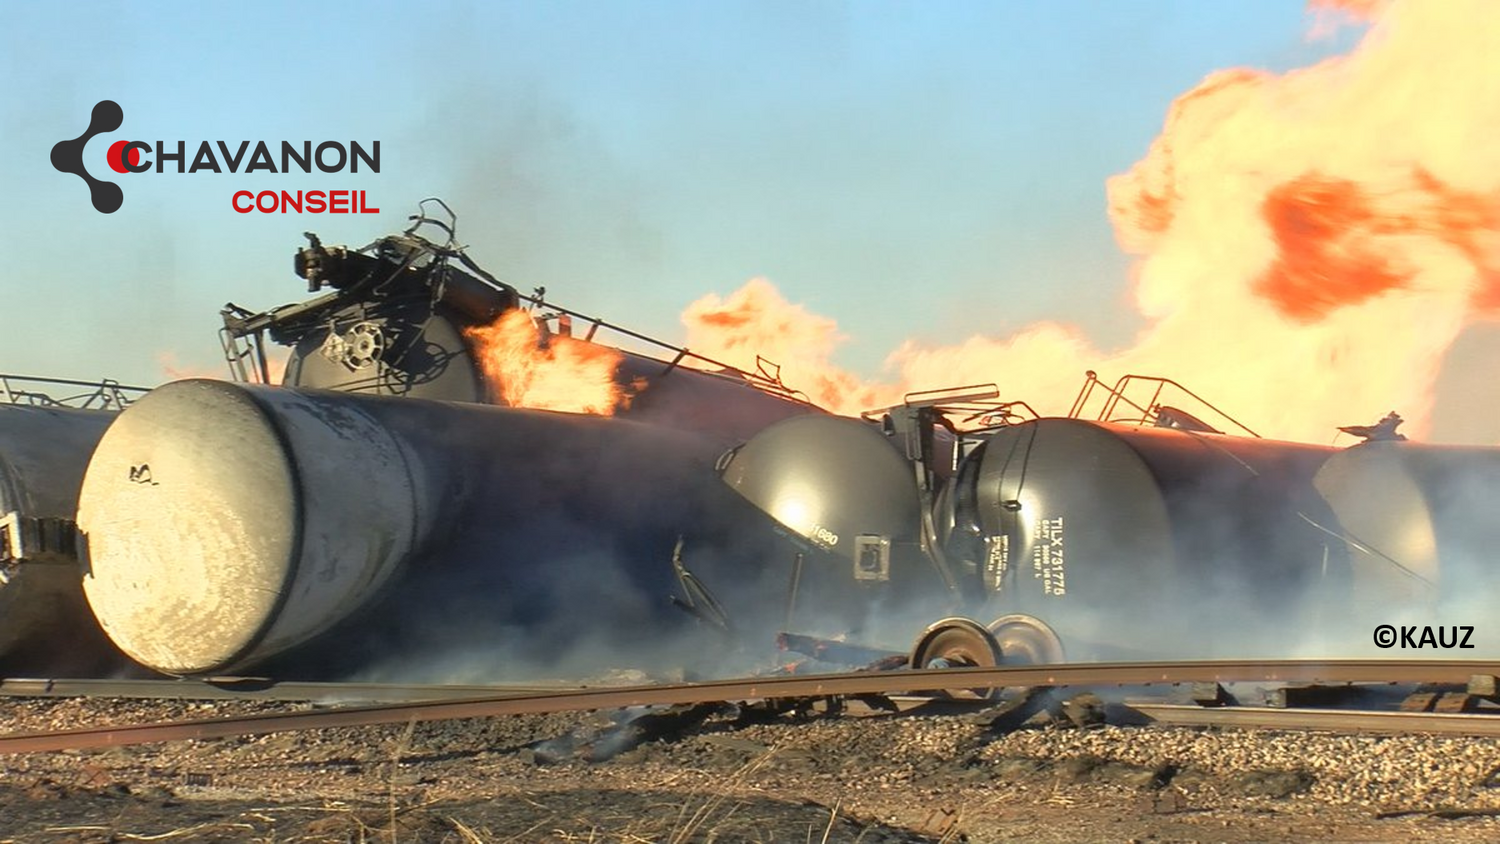 Incendie de 25 wagons d'éthanol dans le Texas, suite au déraillement d'un train de fret, le 09/01/2022